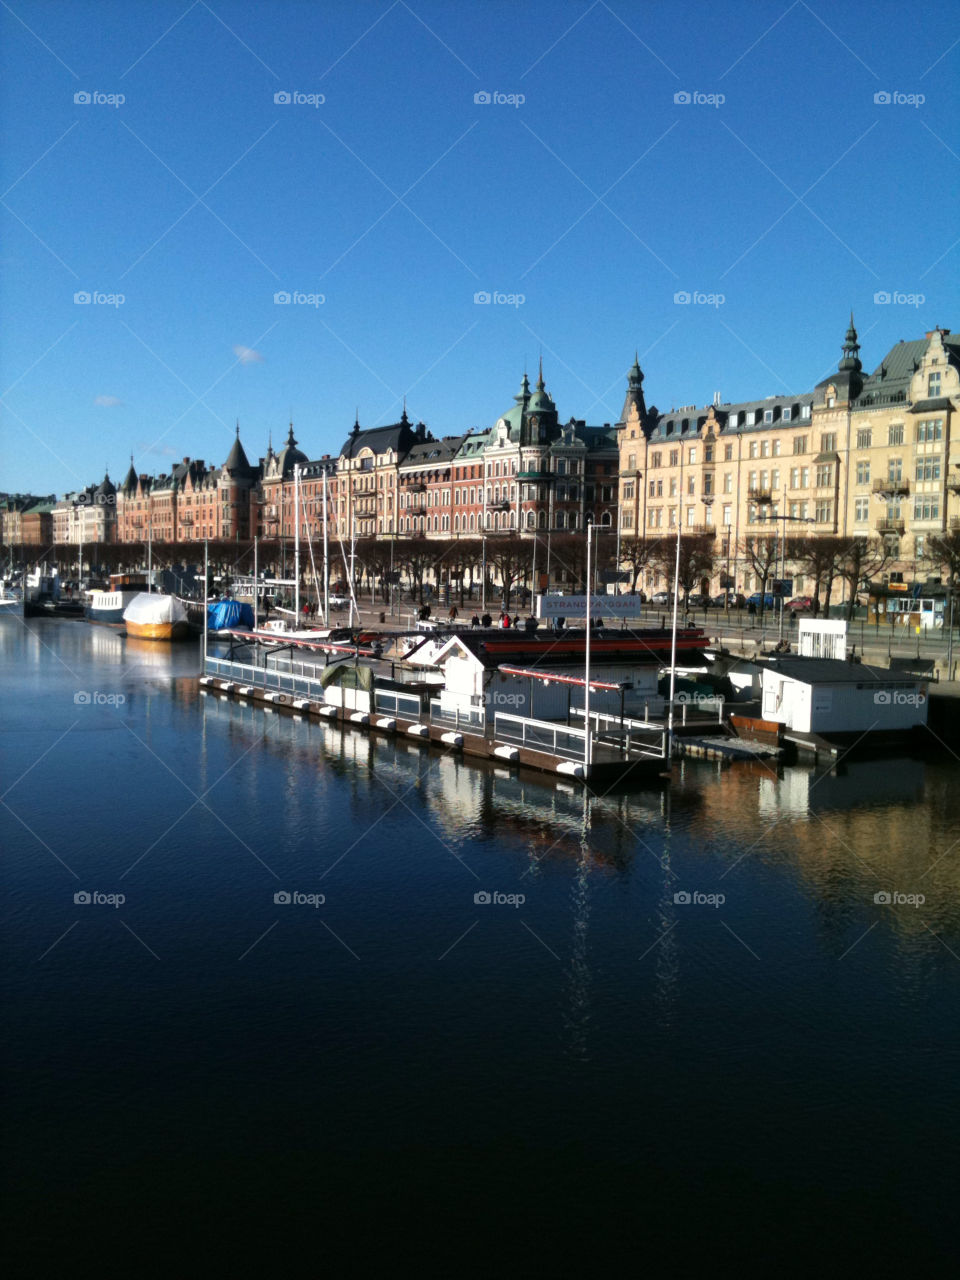 stockholm old capital ships by YlvaF